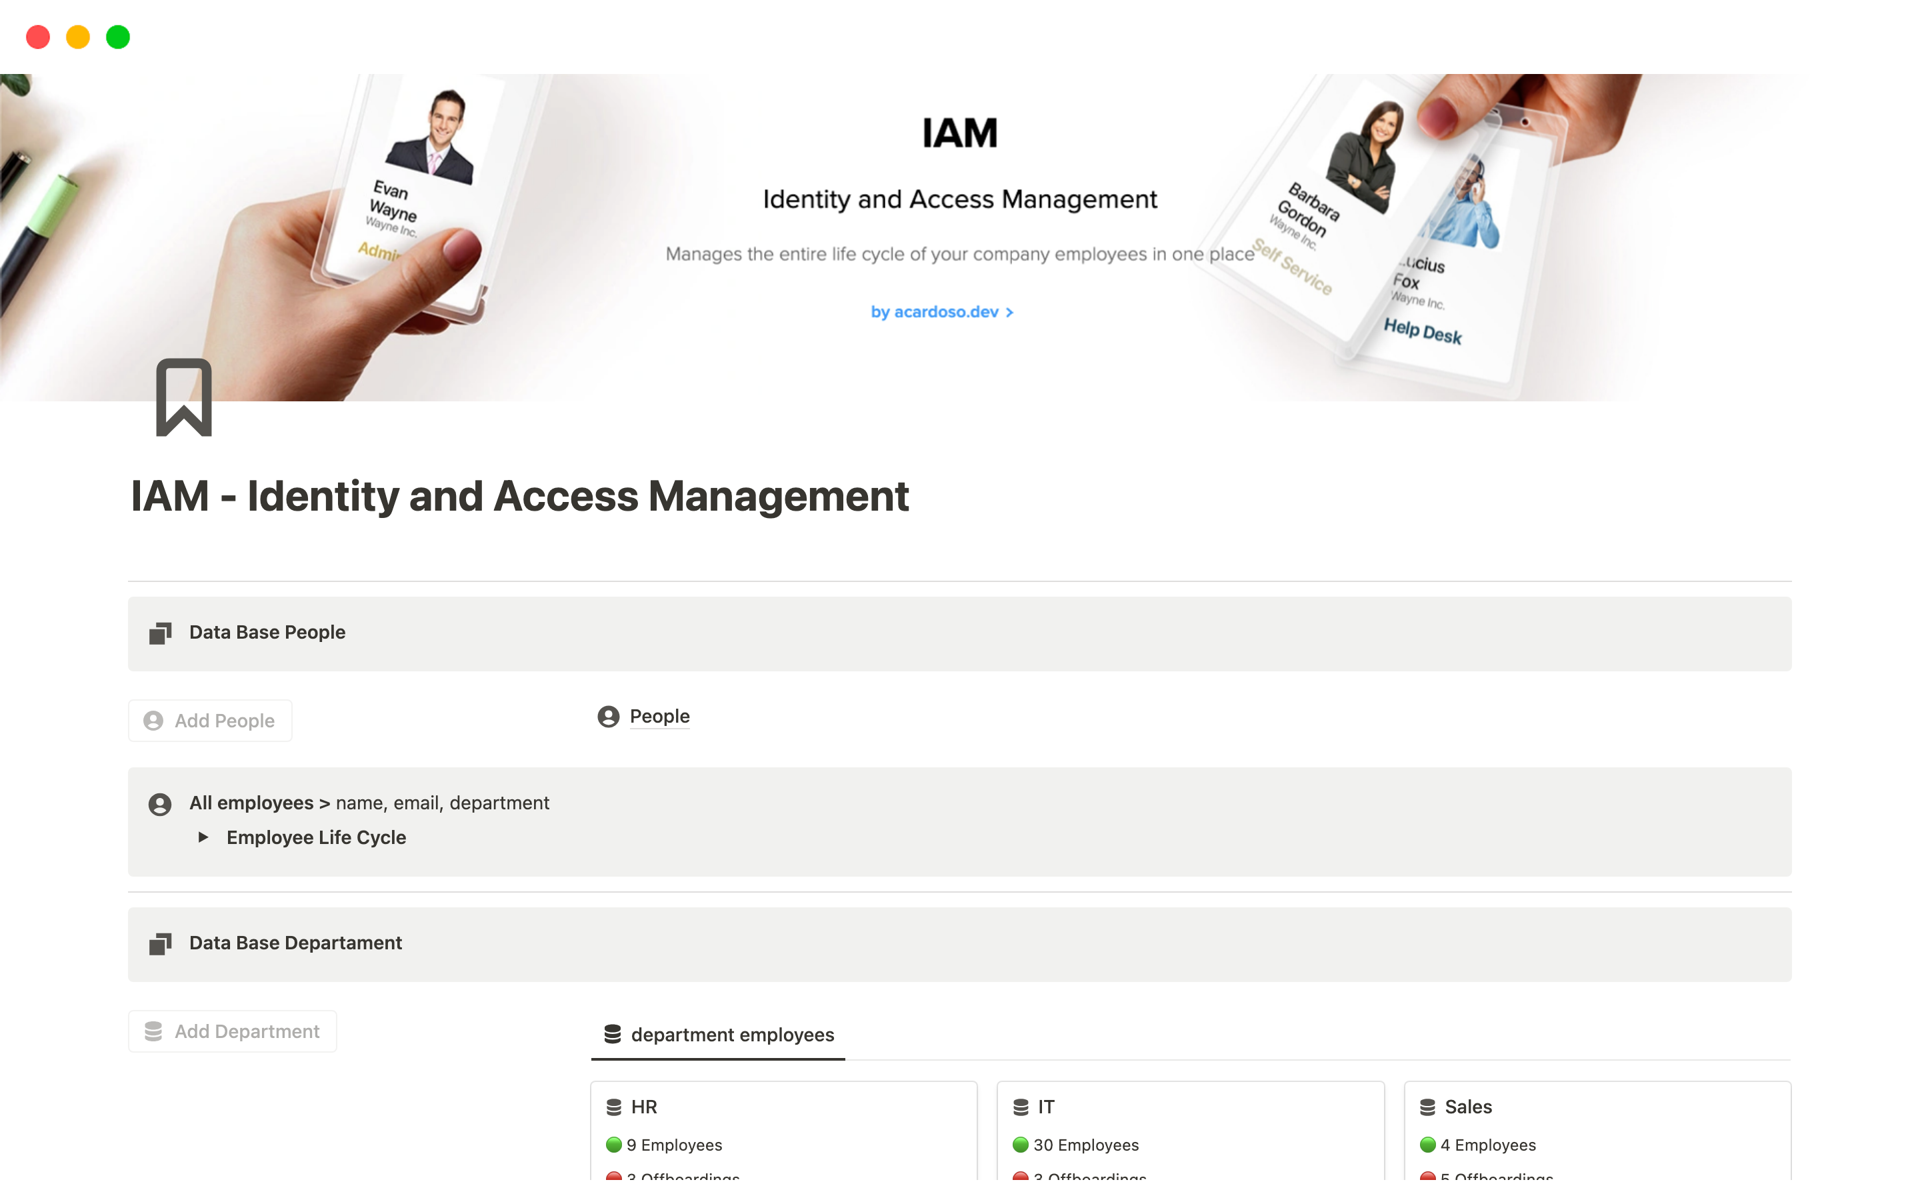 Uma prévia do modelo para IAM - Identity and Access Management